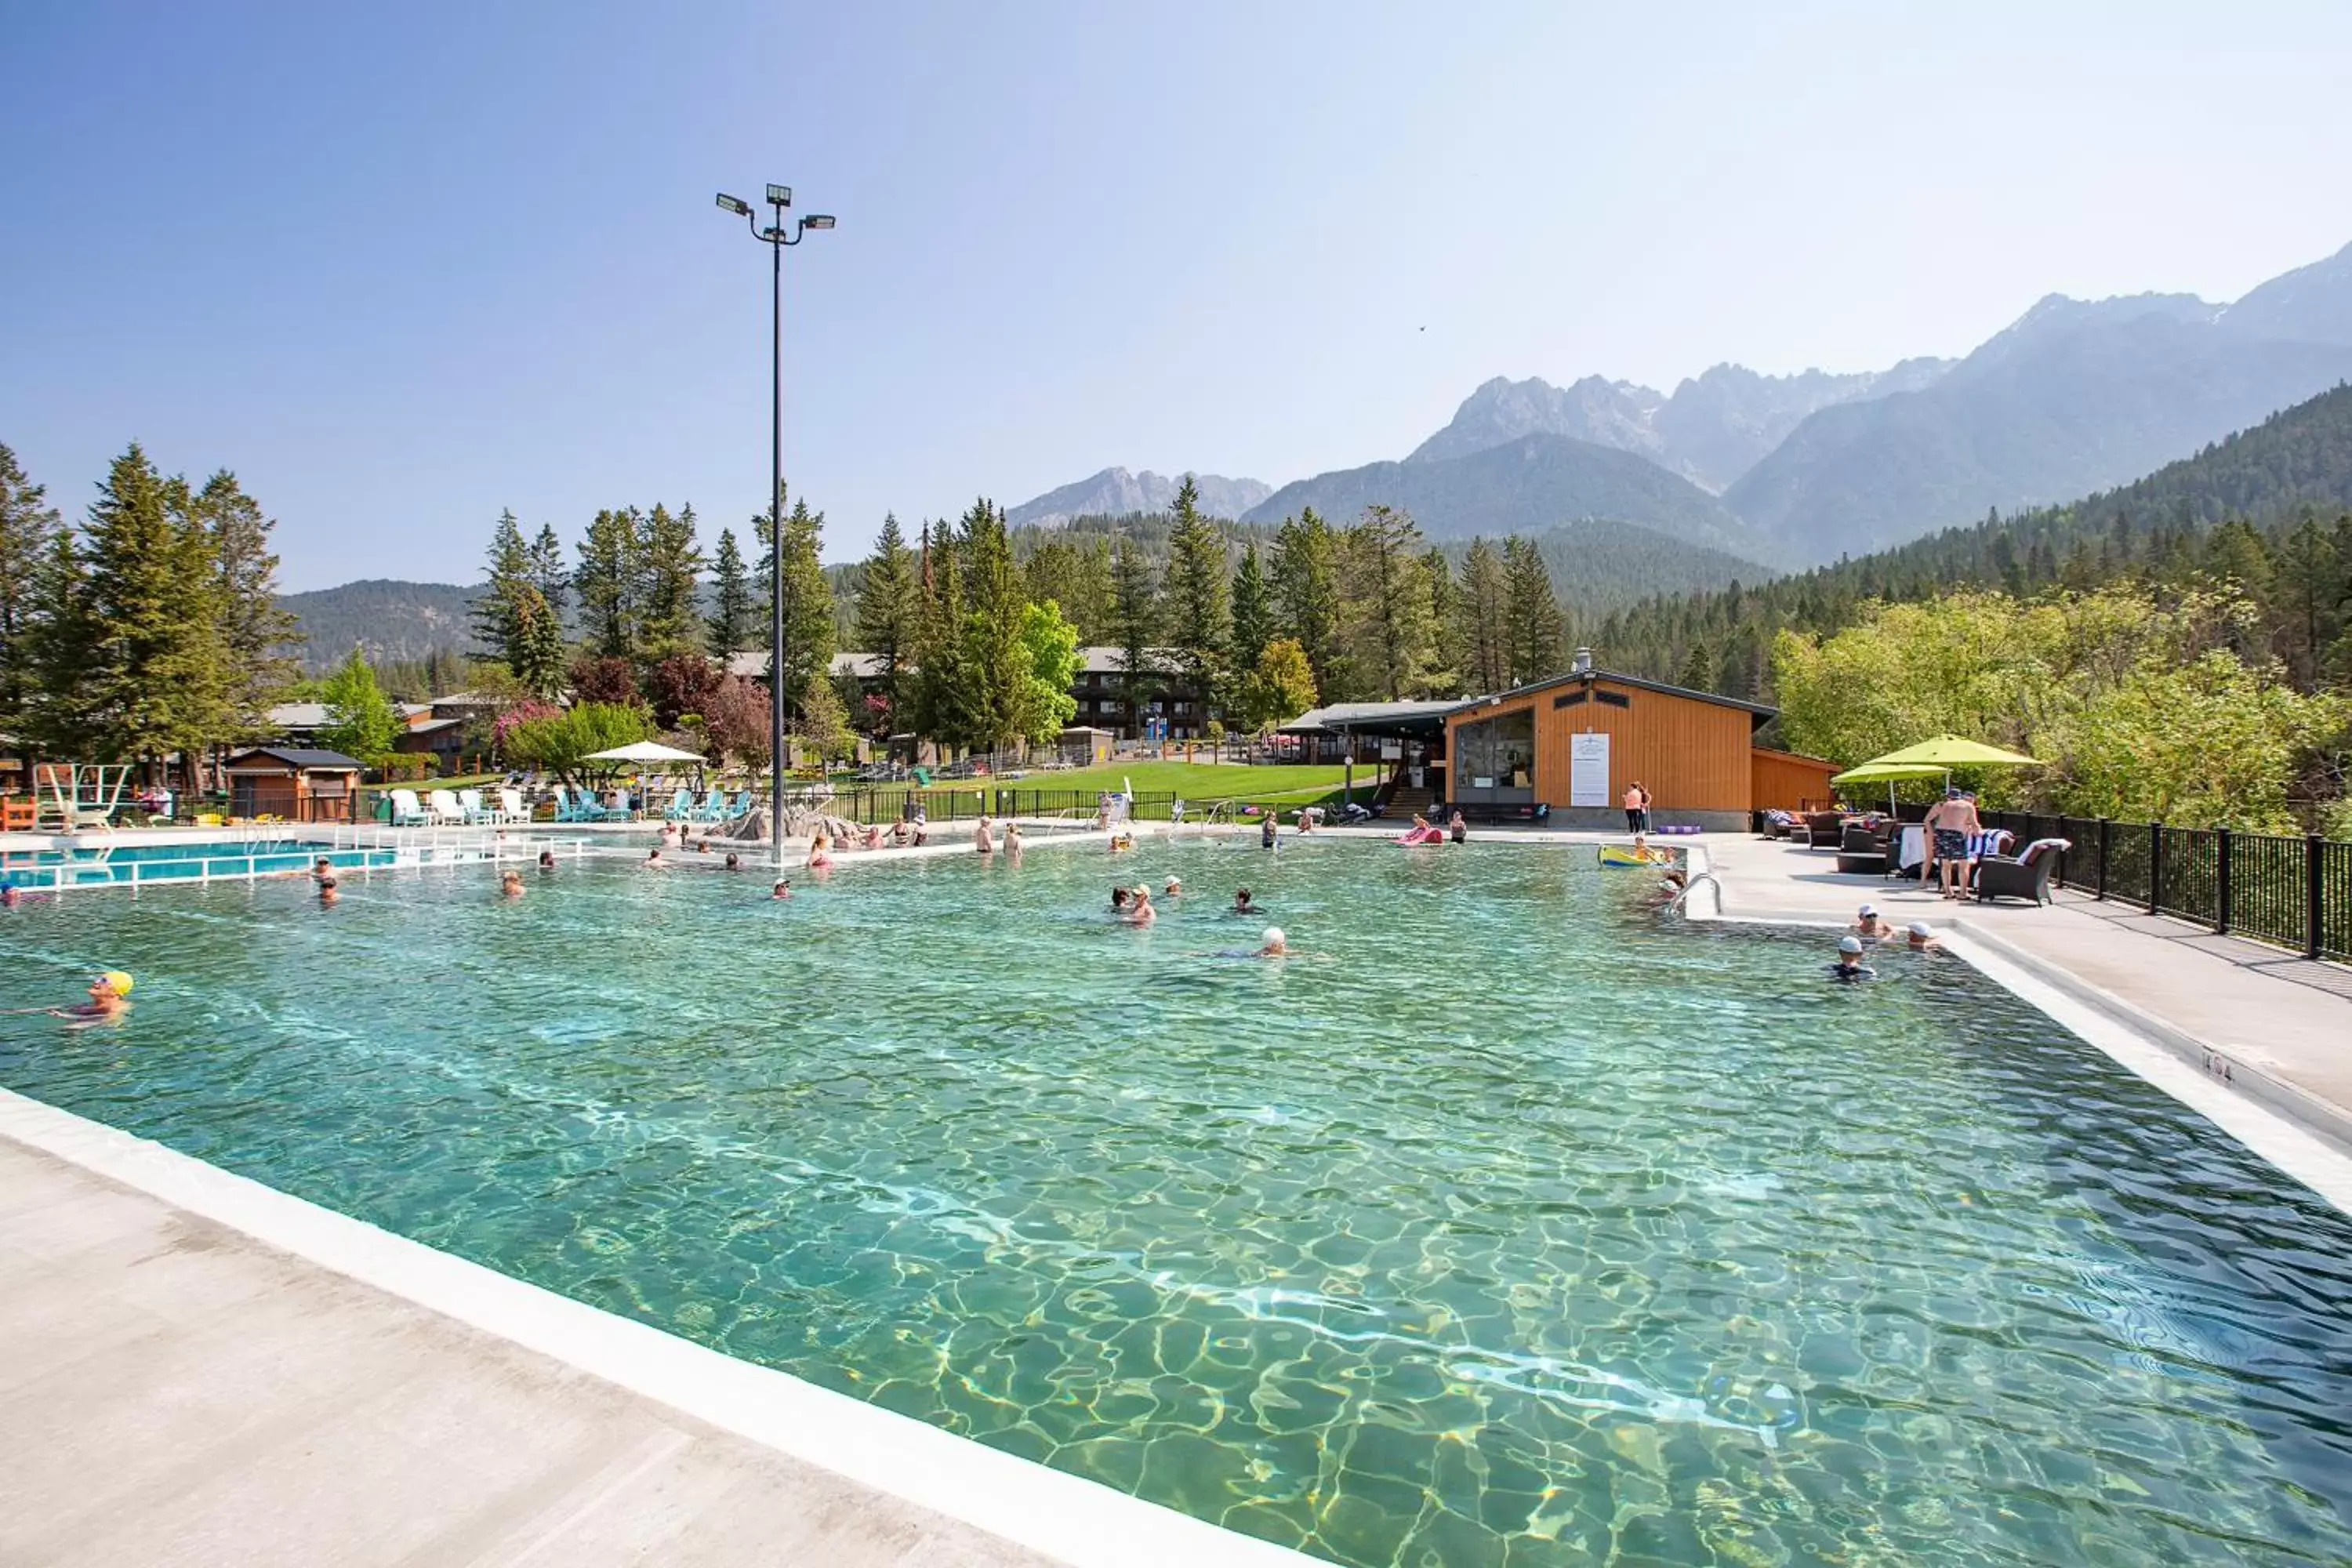 Swimming pool in Fairmont Hot Springs Resort